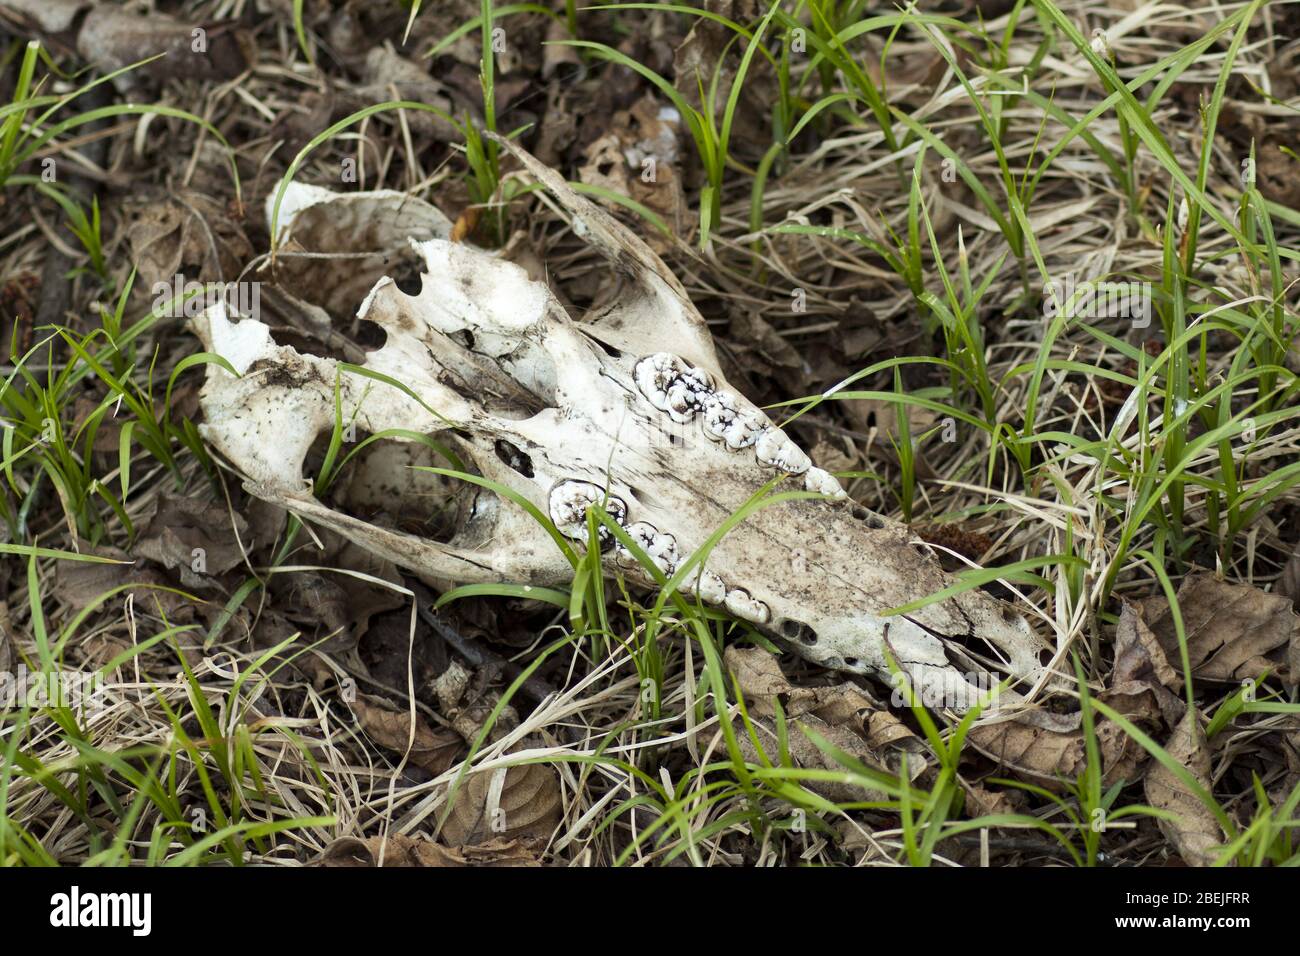 Cranio di un animale selvatico con denti molari visibili che giacciono nella foresta. Foto Stock